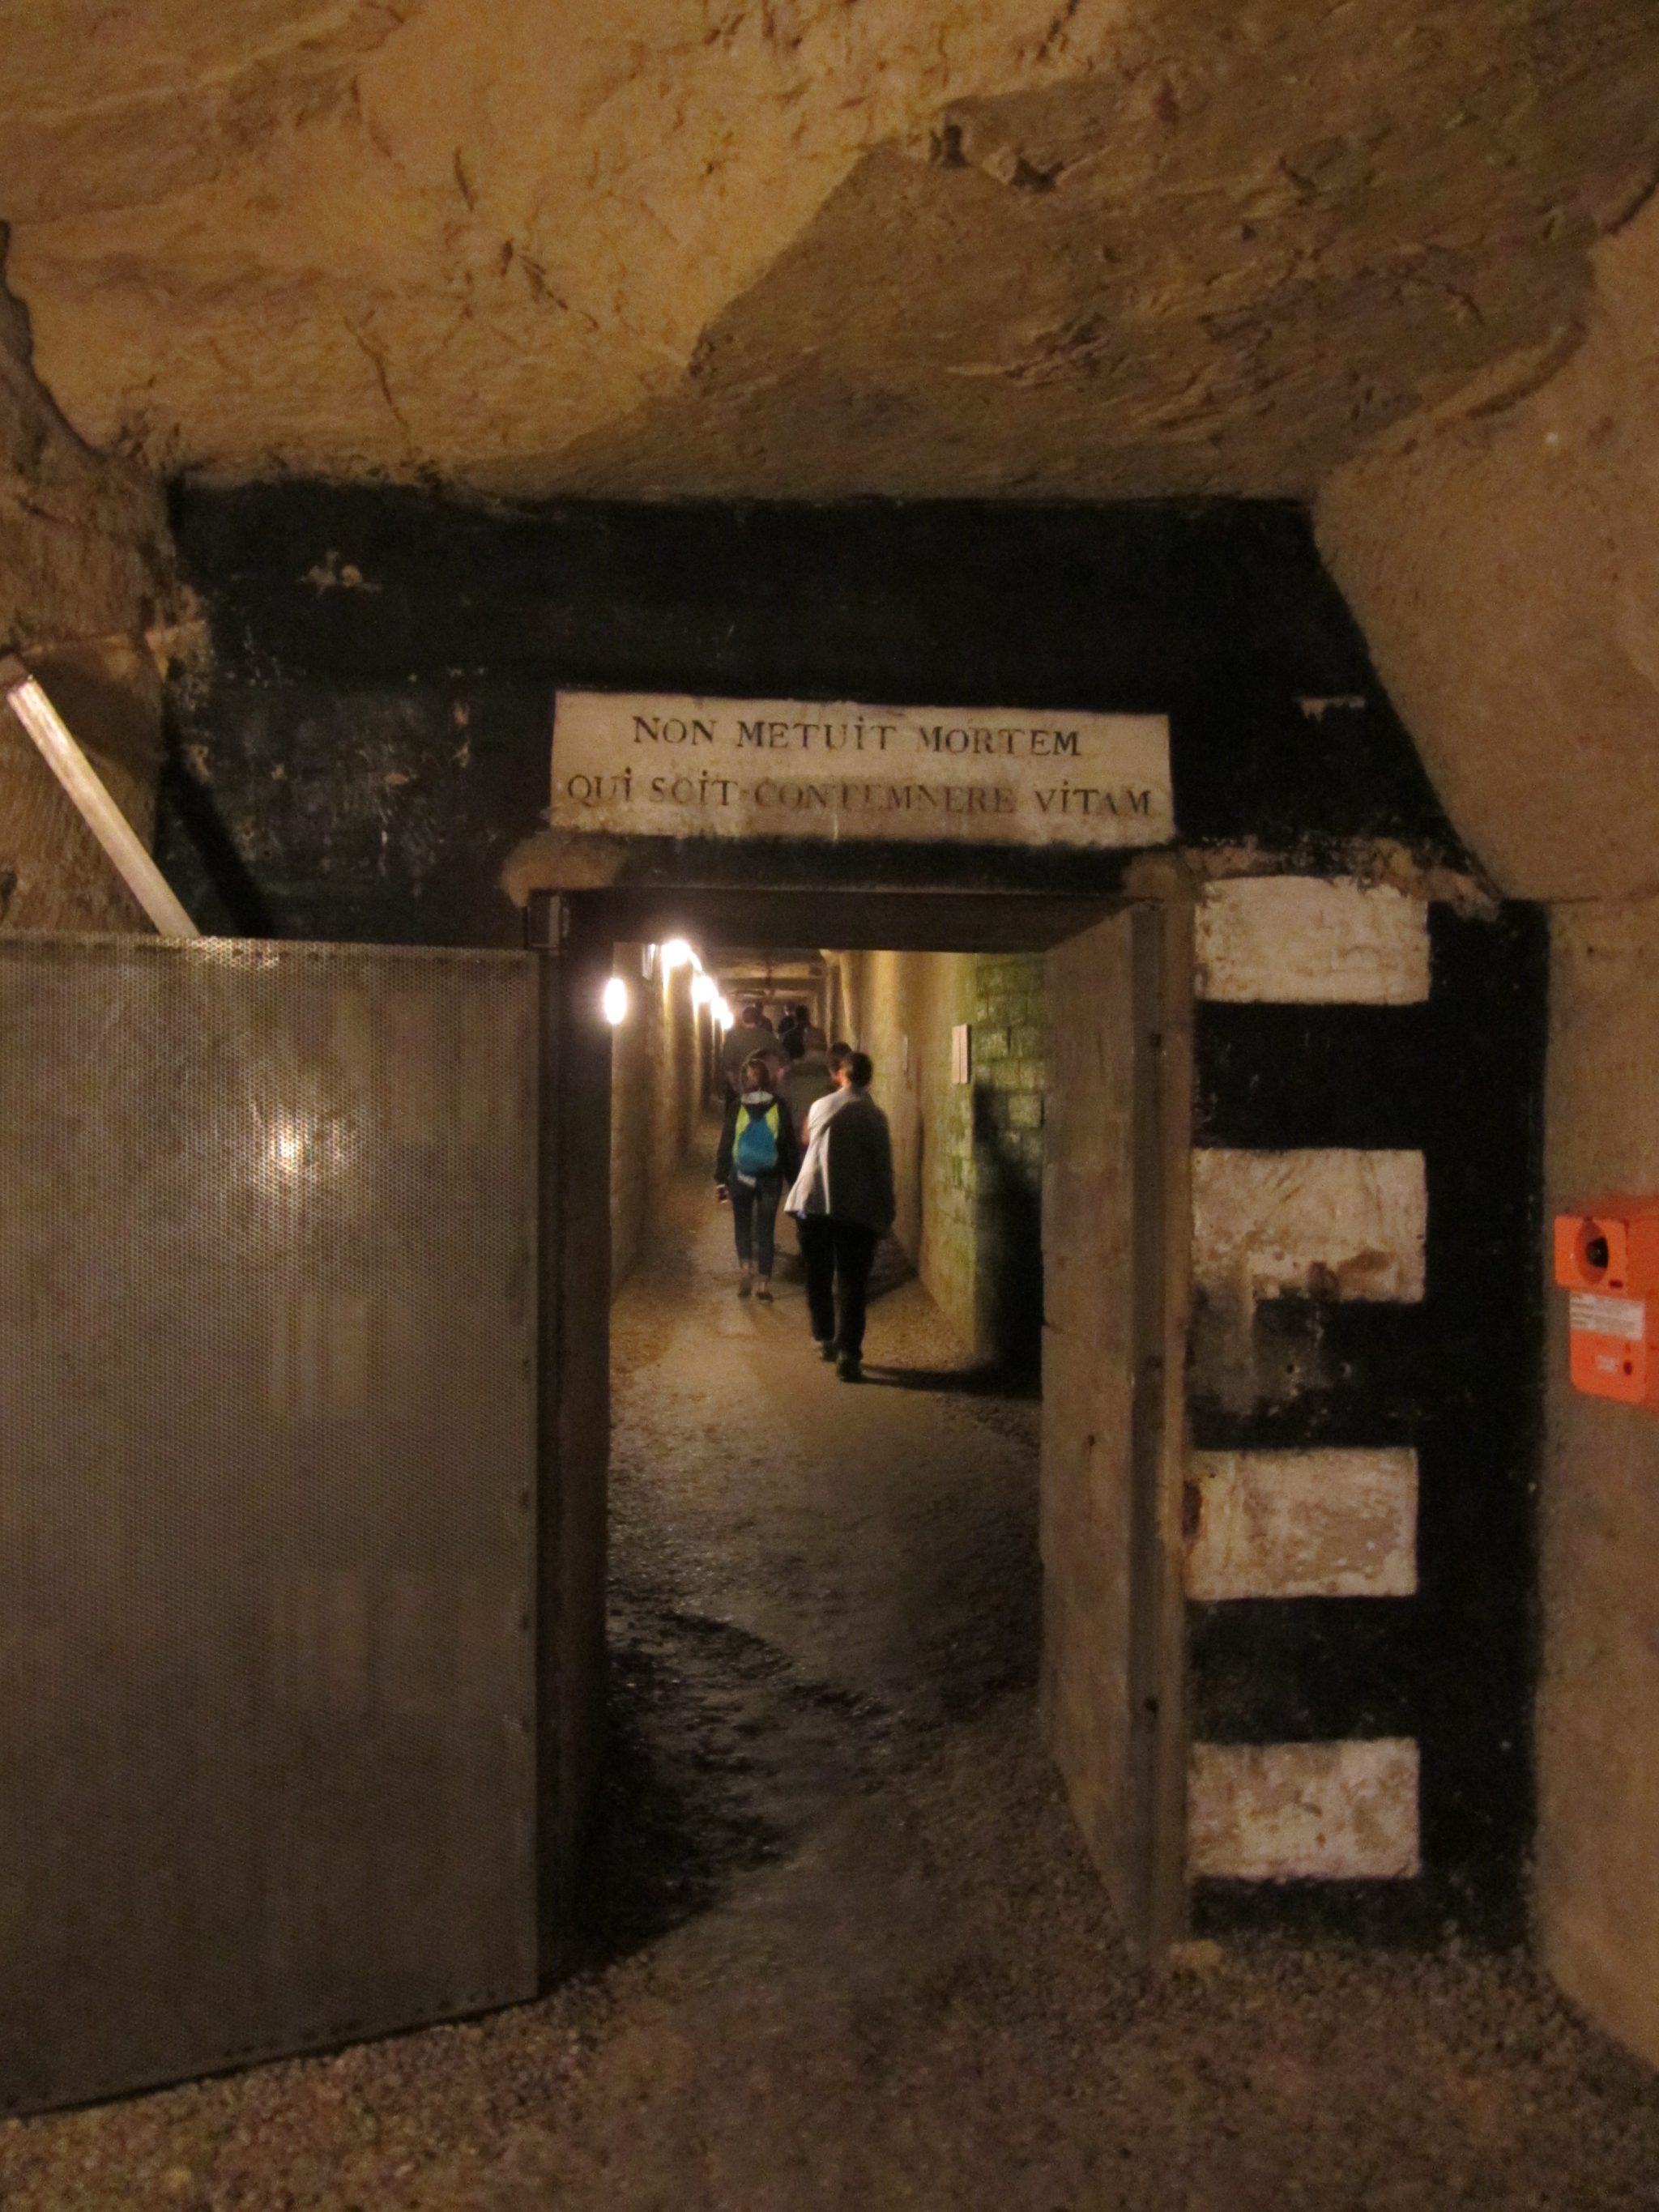 Doorway and Walkway in the Catacombs in Paris